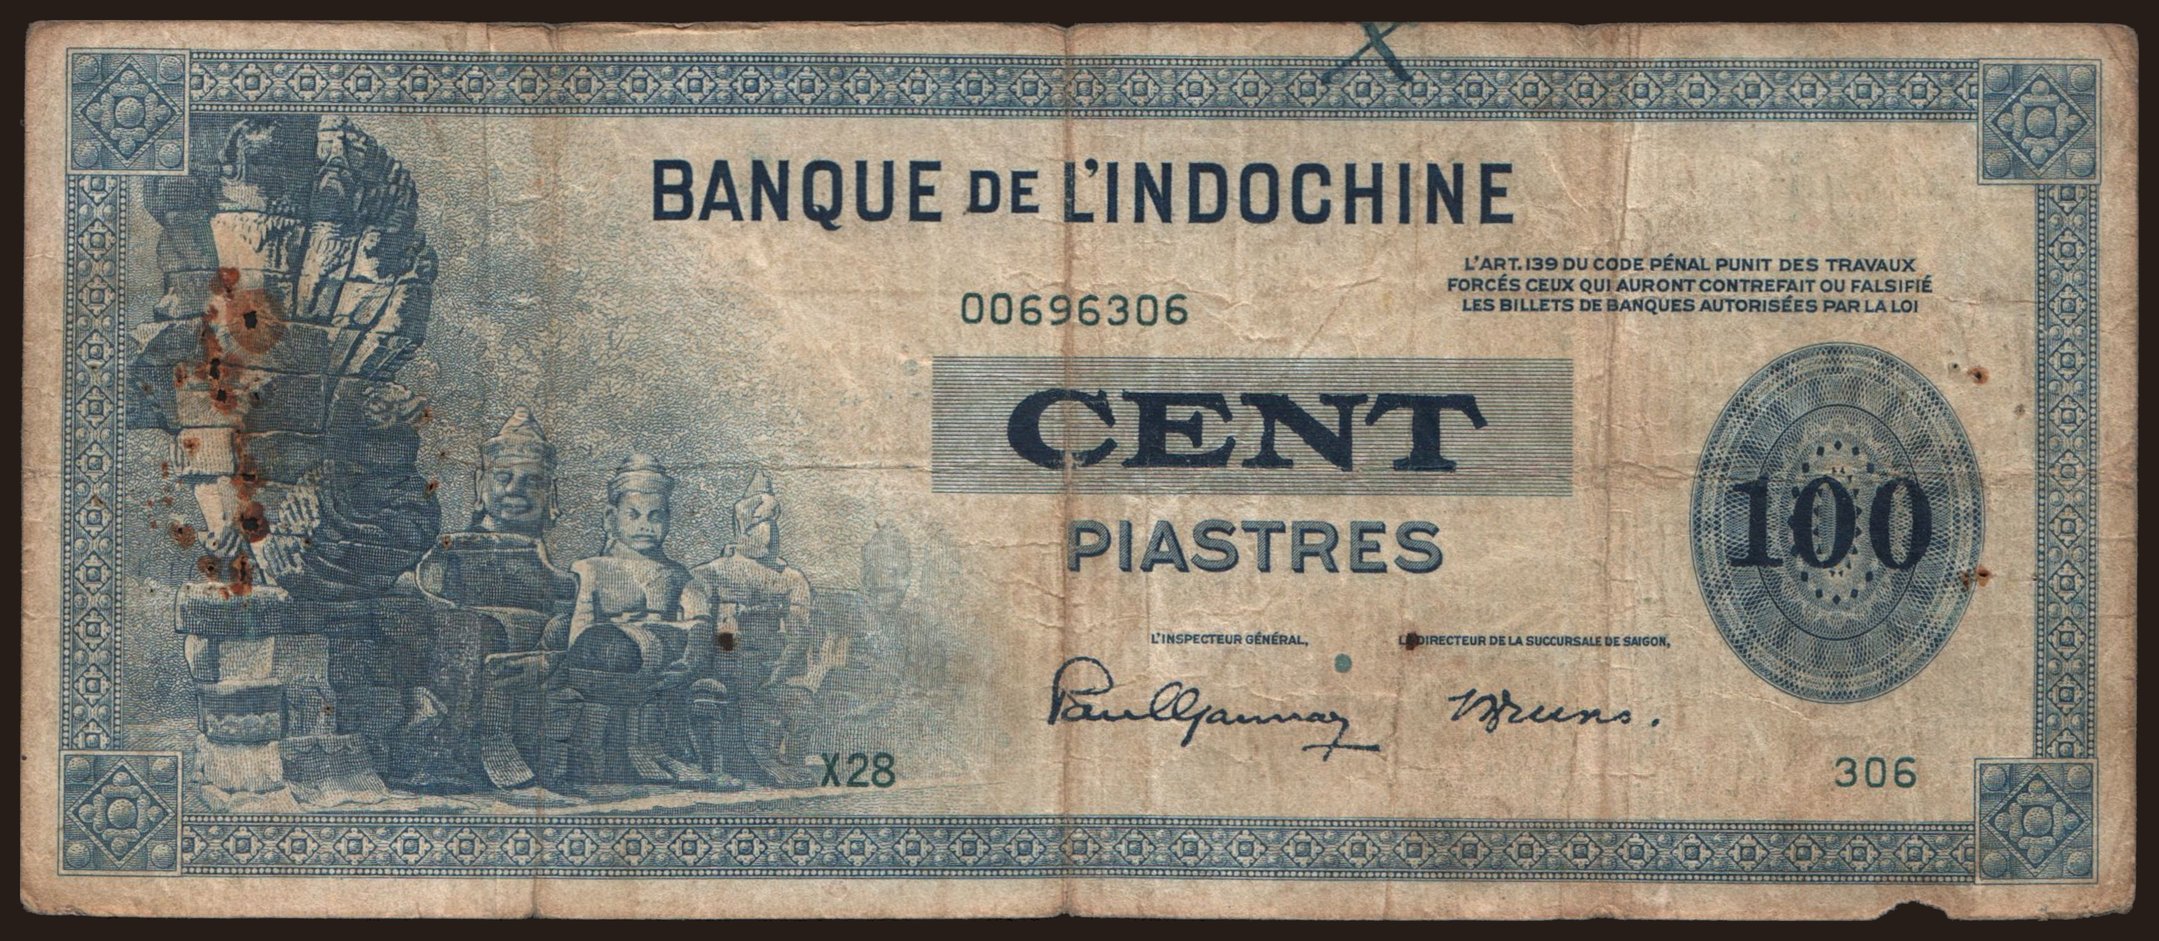 100 piastres, 1945